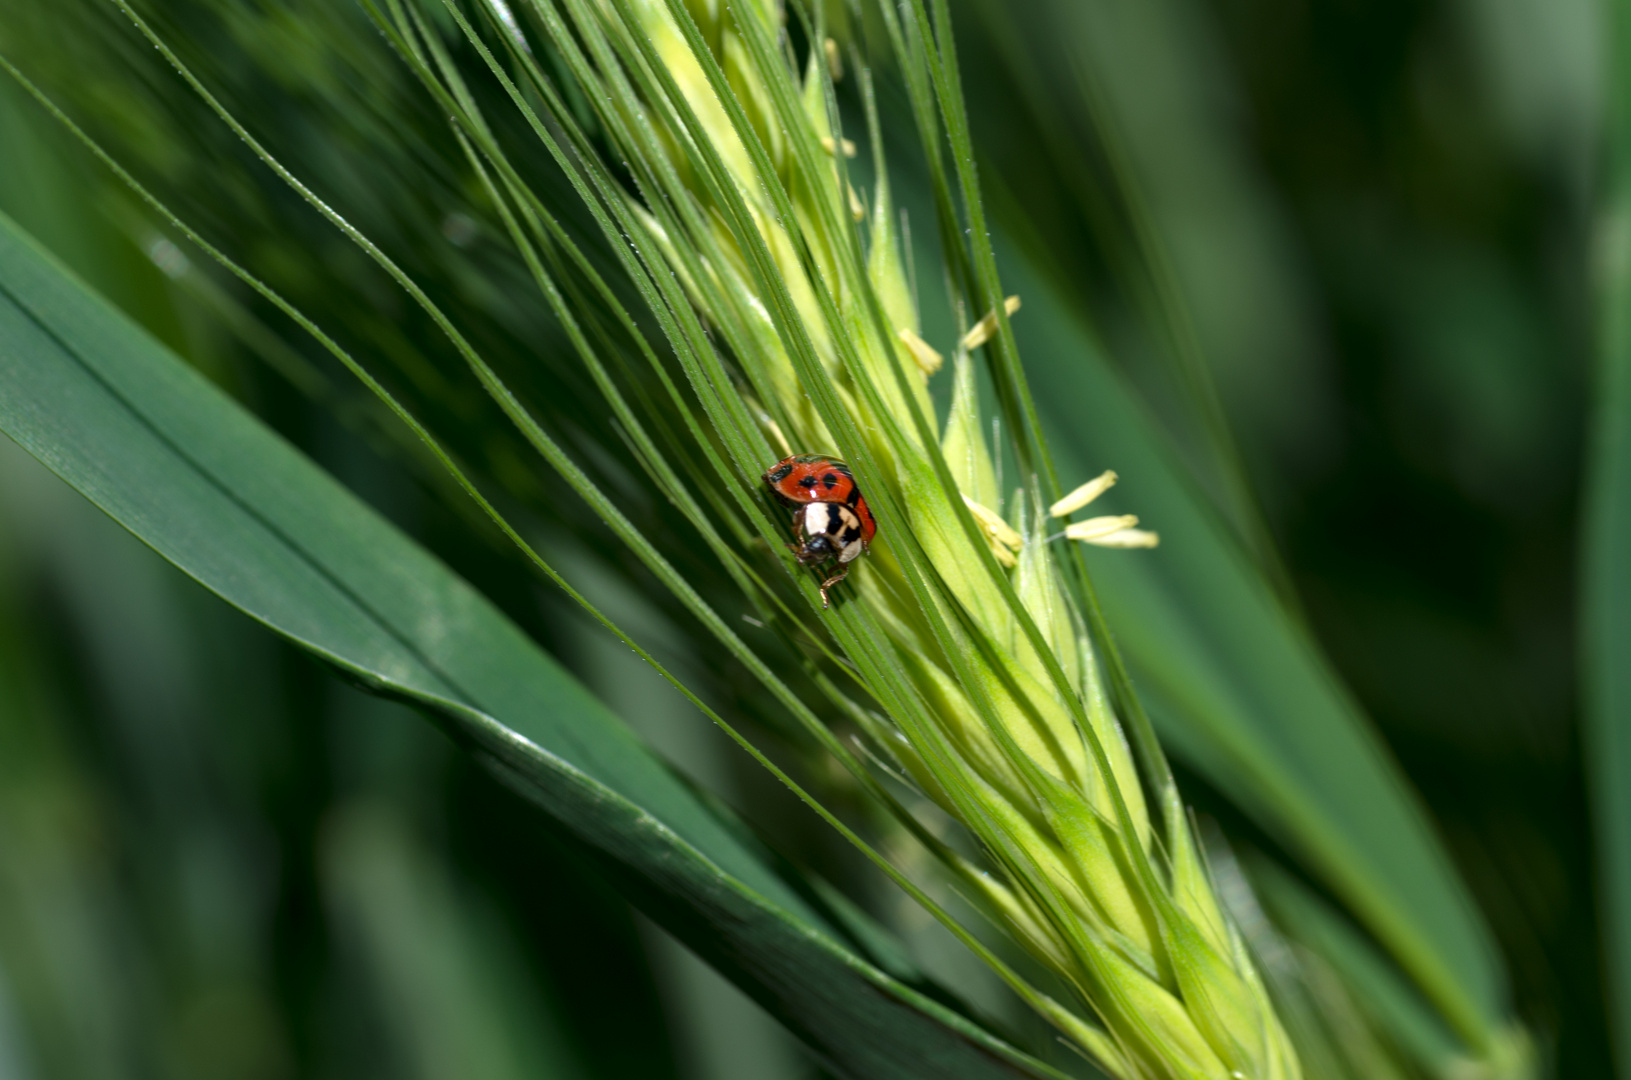 Ladybug in the rye